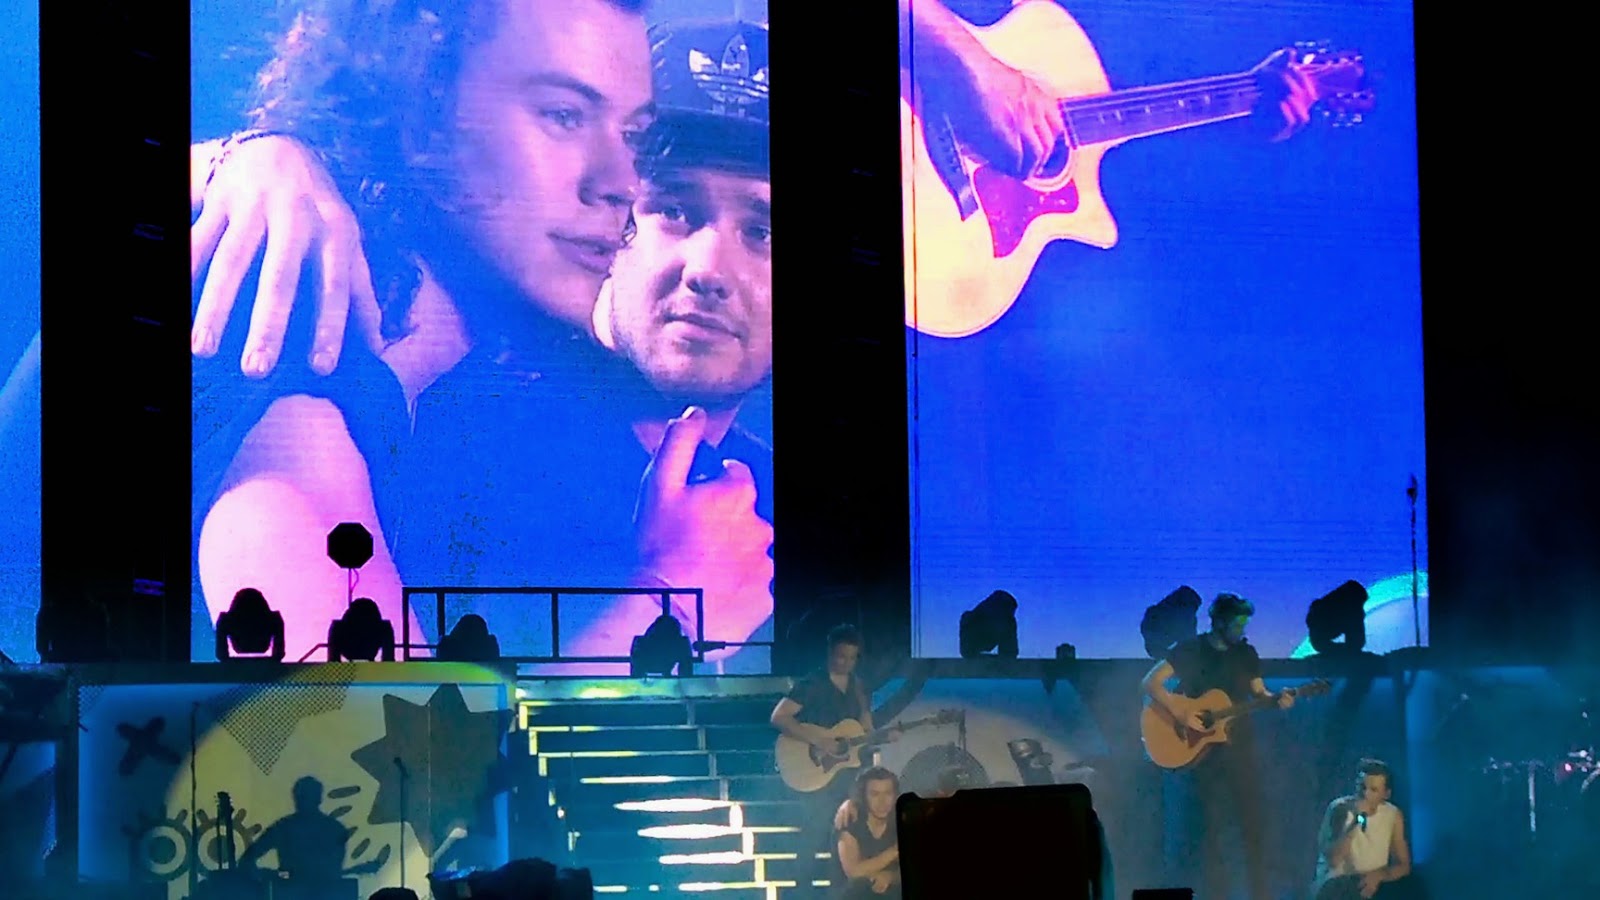 Tender moment between Harry & Liam